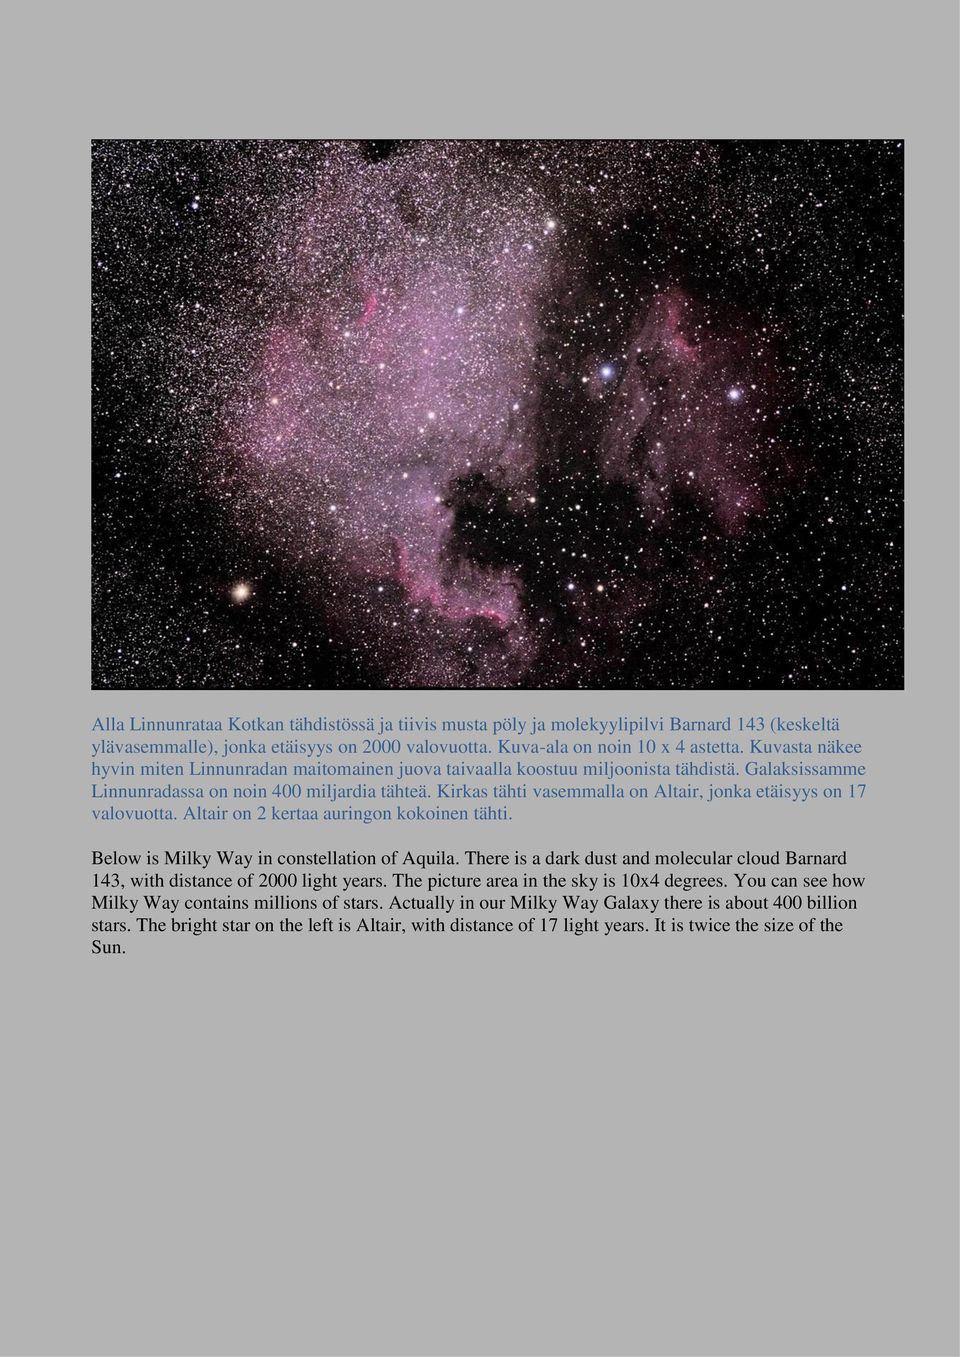 Kirkas tähti vasemmalla on Altair, jonka etäisyys on 17 valovuotta. Altair on 2 kertaa auringon kokoinen tähti. Below is Milky Way in constellation of Aquila.